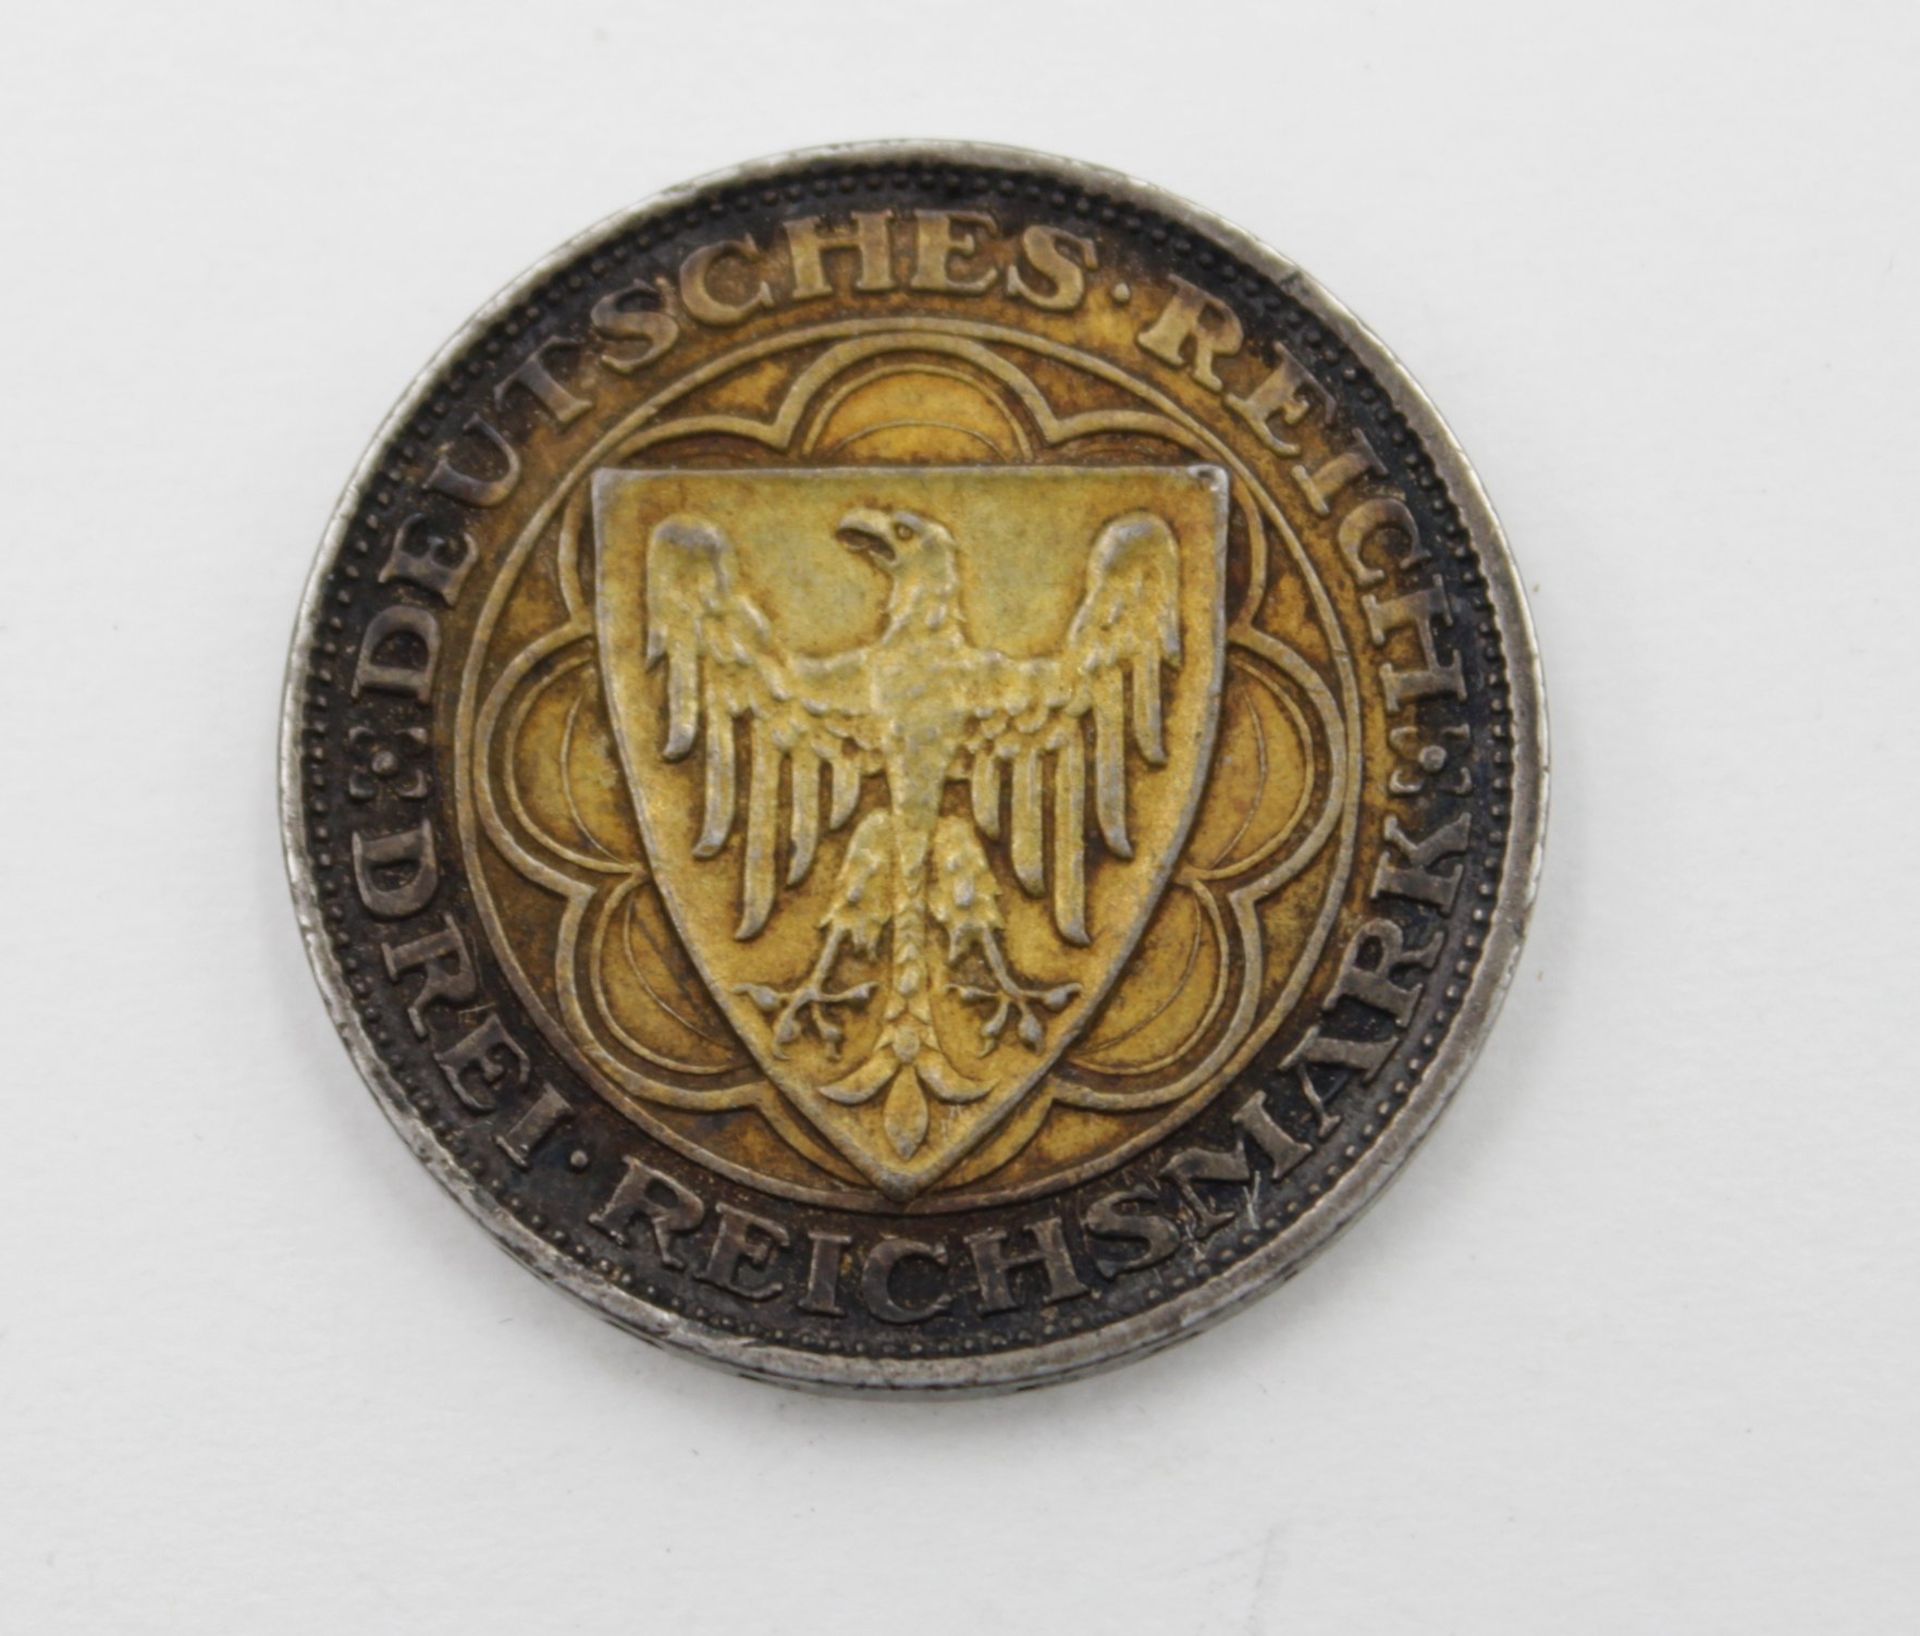 Drei Reichsmark, Deutsches Reich, 1927 A, Hundert Jahre Bremerhaven, 14,9gr., D-3cm, Altersspuren - Image 2 of 2